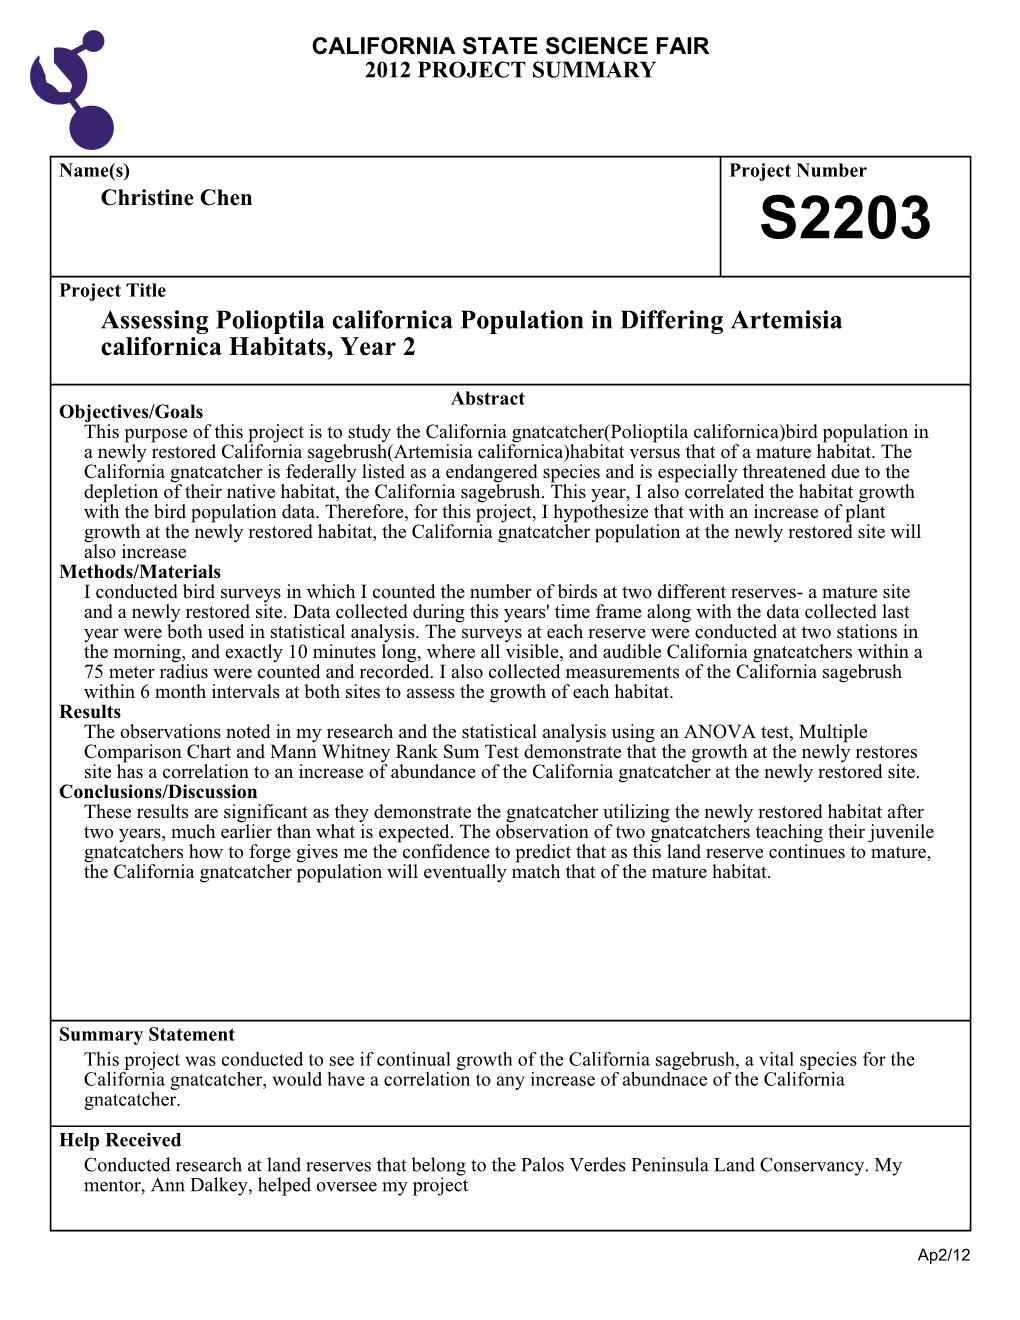 Assessing Polioptila Californica Population in Differing Artemisia Californica Habitats, Year 2